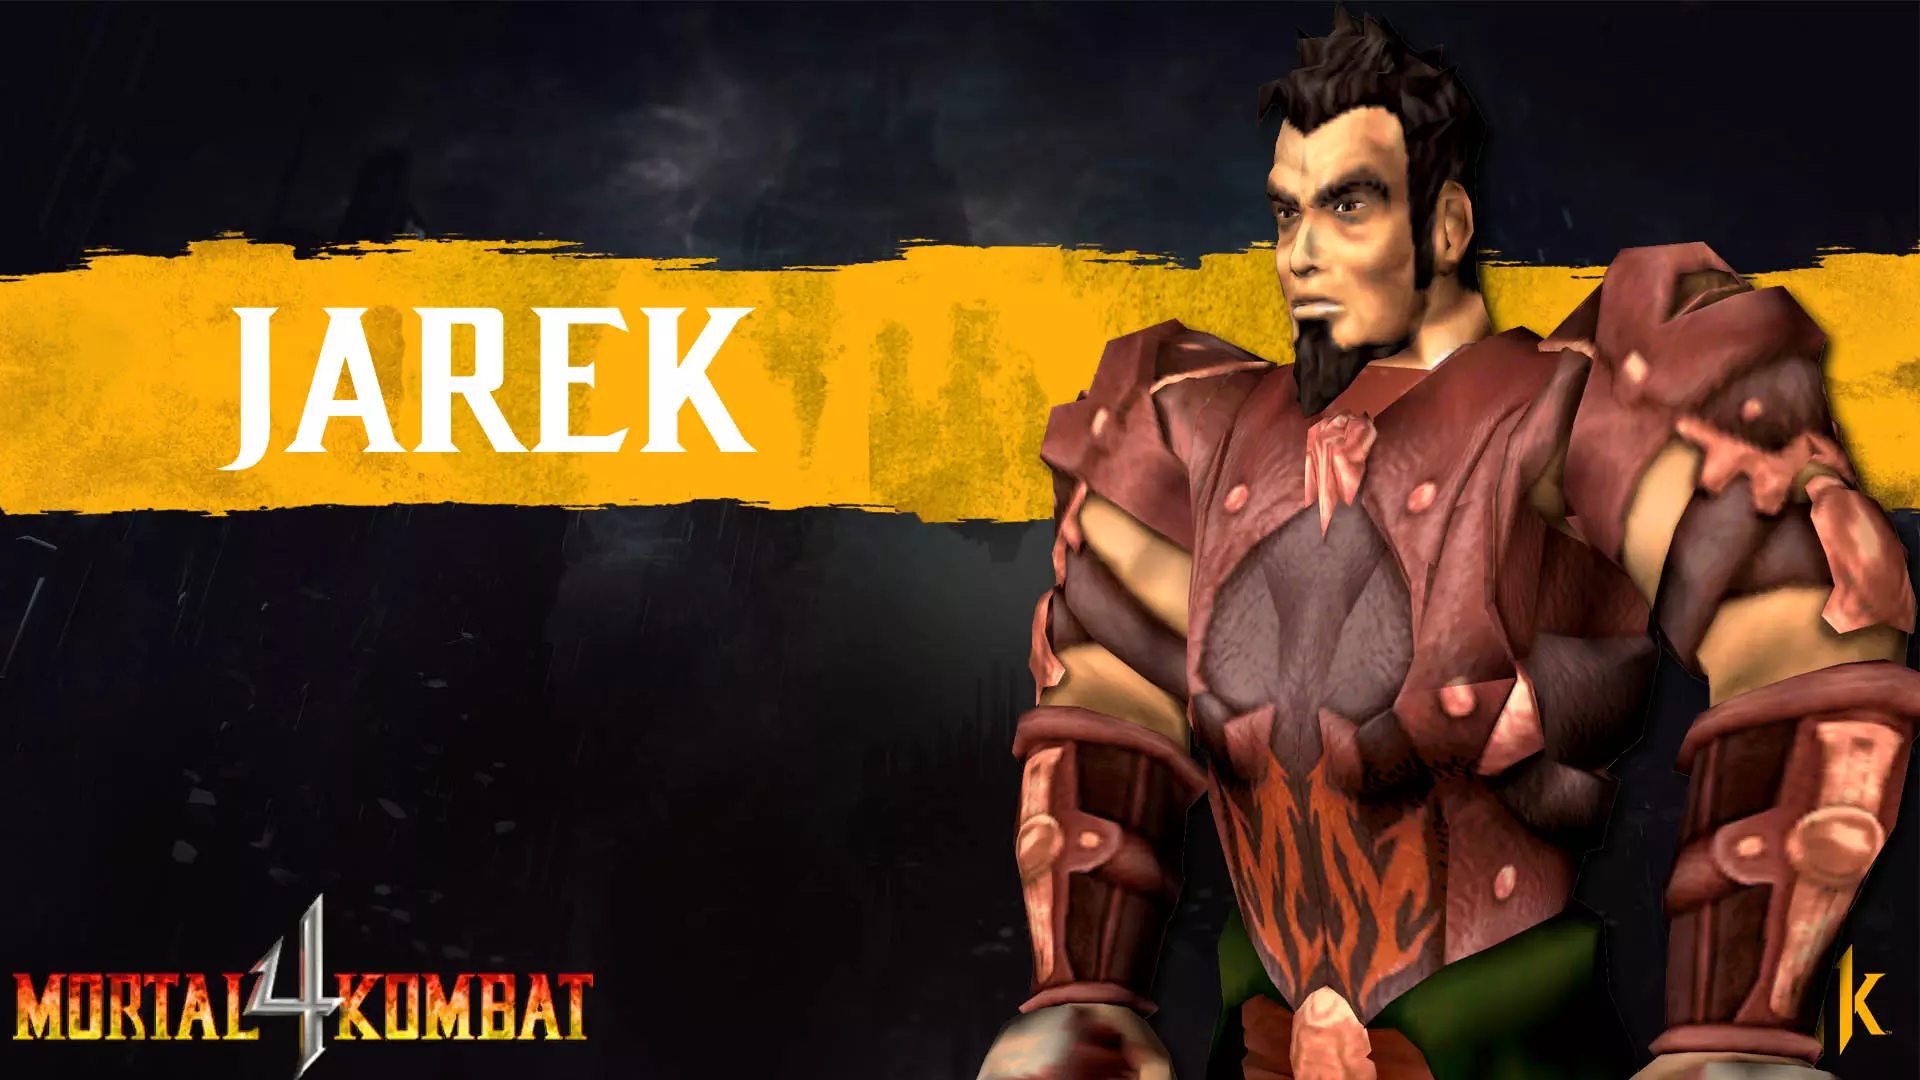 شخصیت جرک در مجموعه Mortal Kombat